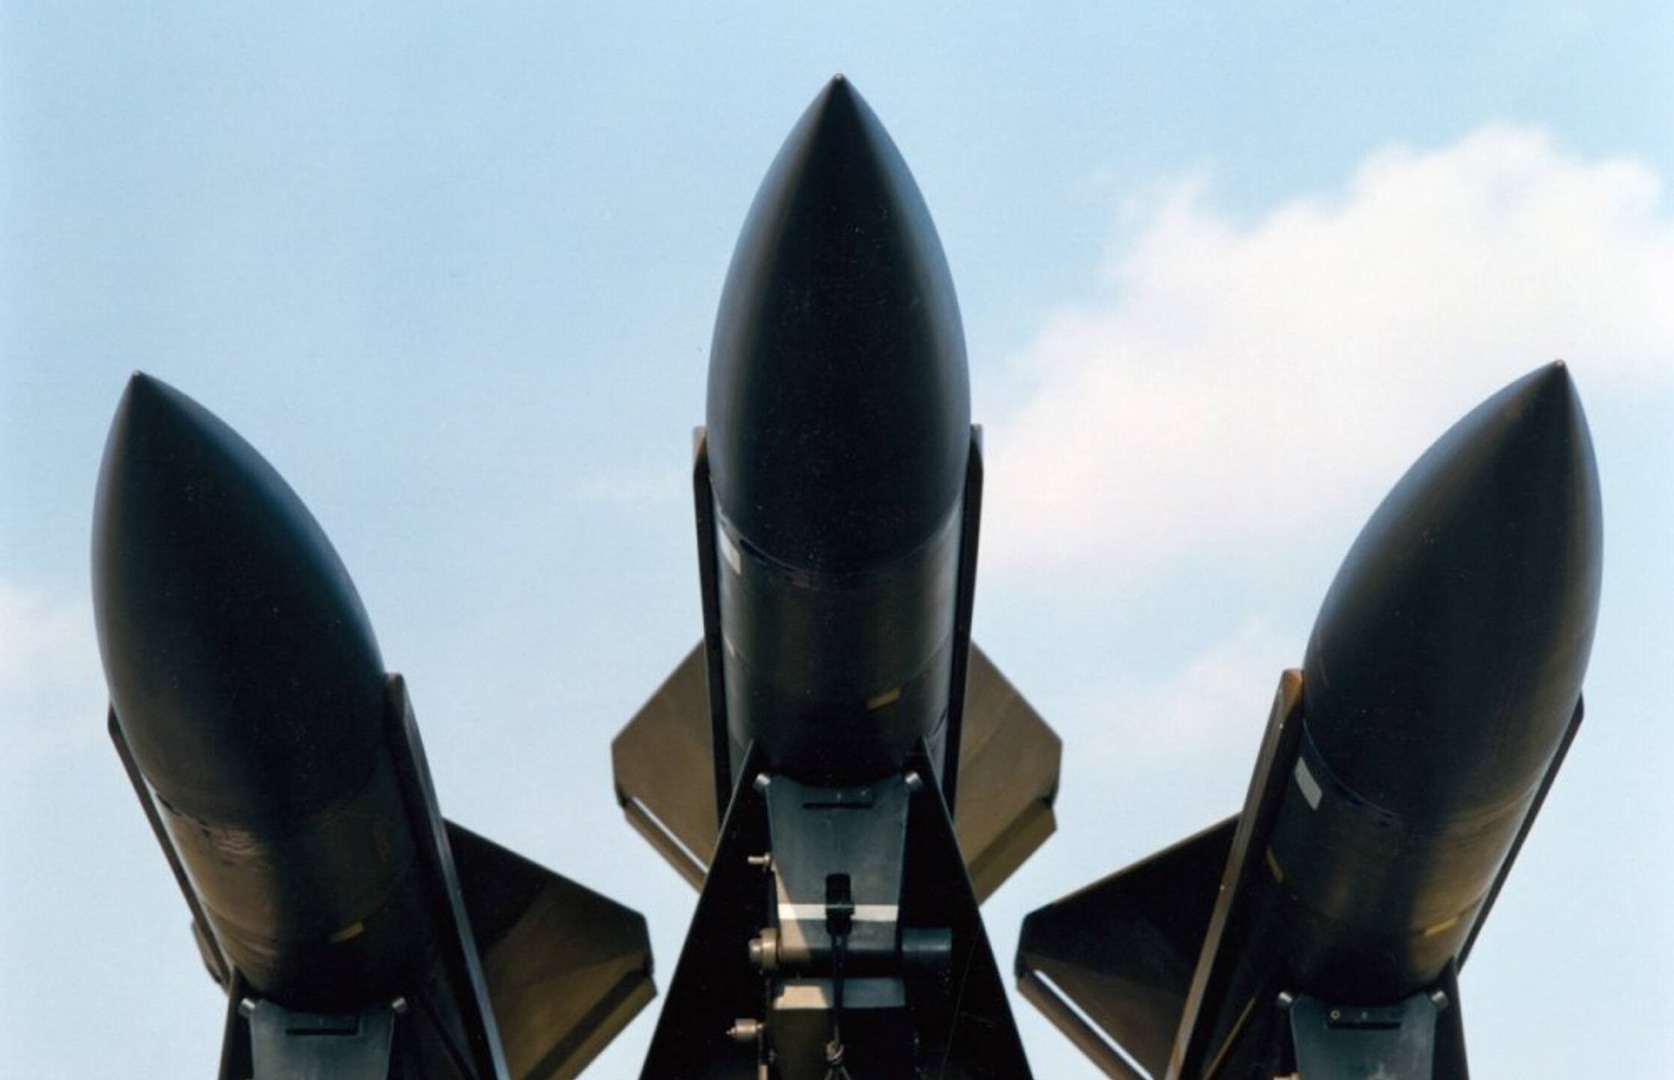 وسائل إعلام: الولايات المتحدة تشتري مئات الصواريخ من تايوان لتسليمها لأوكرانيا